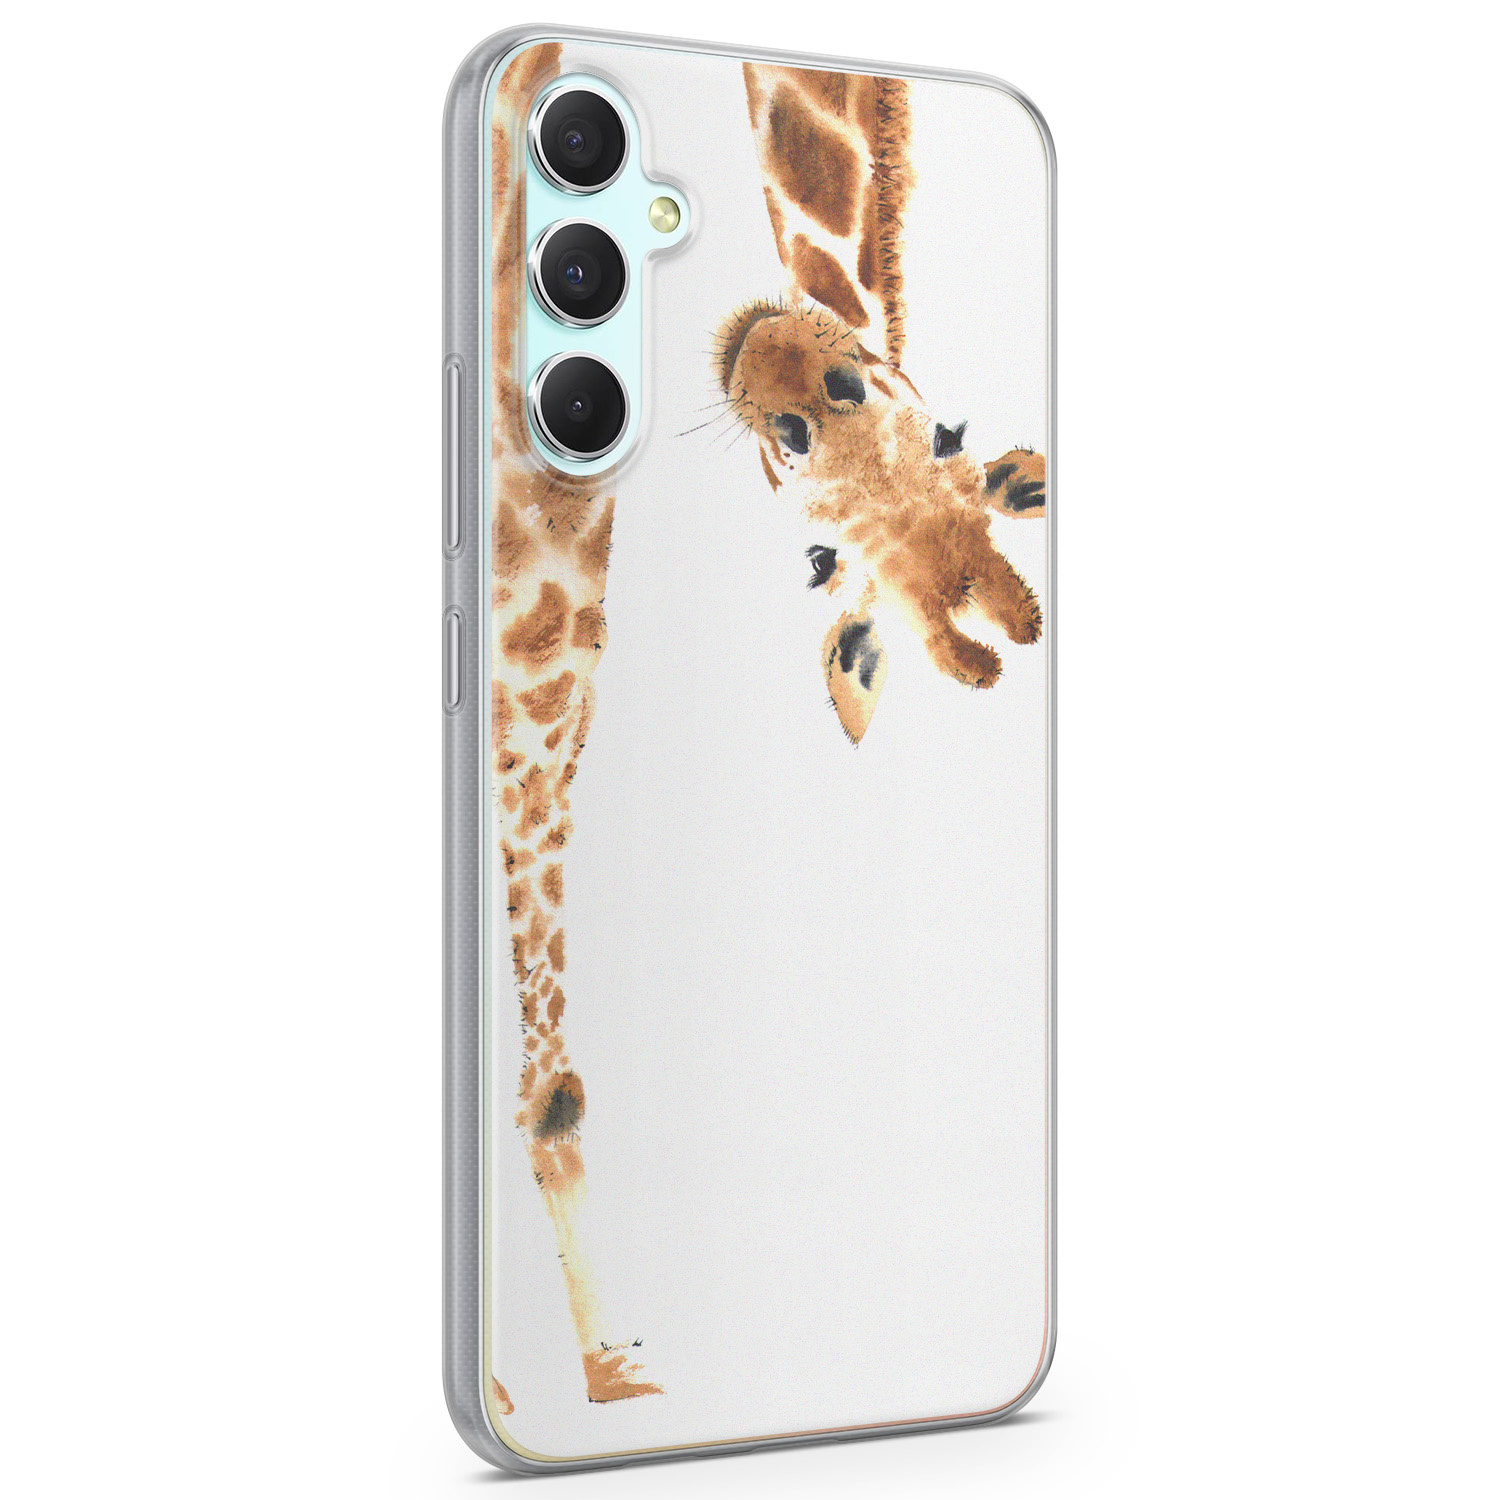 Leuke Telefoonhoesjes Samsung Galaxy A34 siliconen hoesje - Giraffe peekaboo